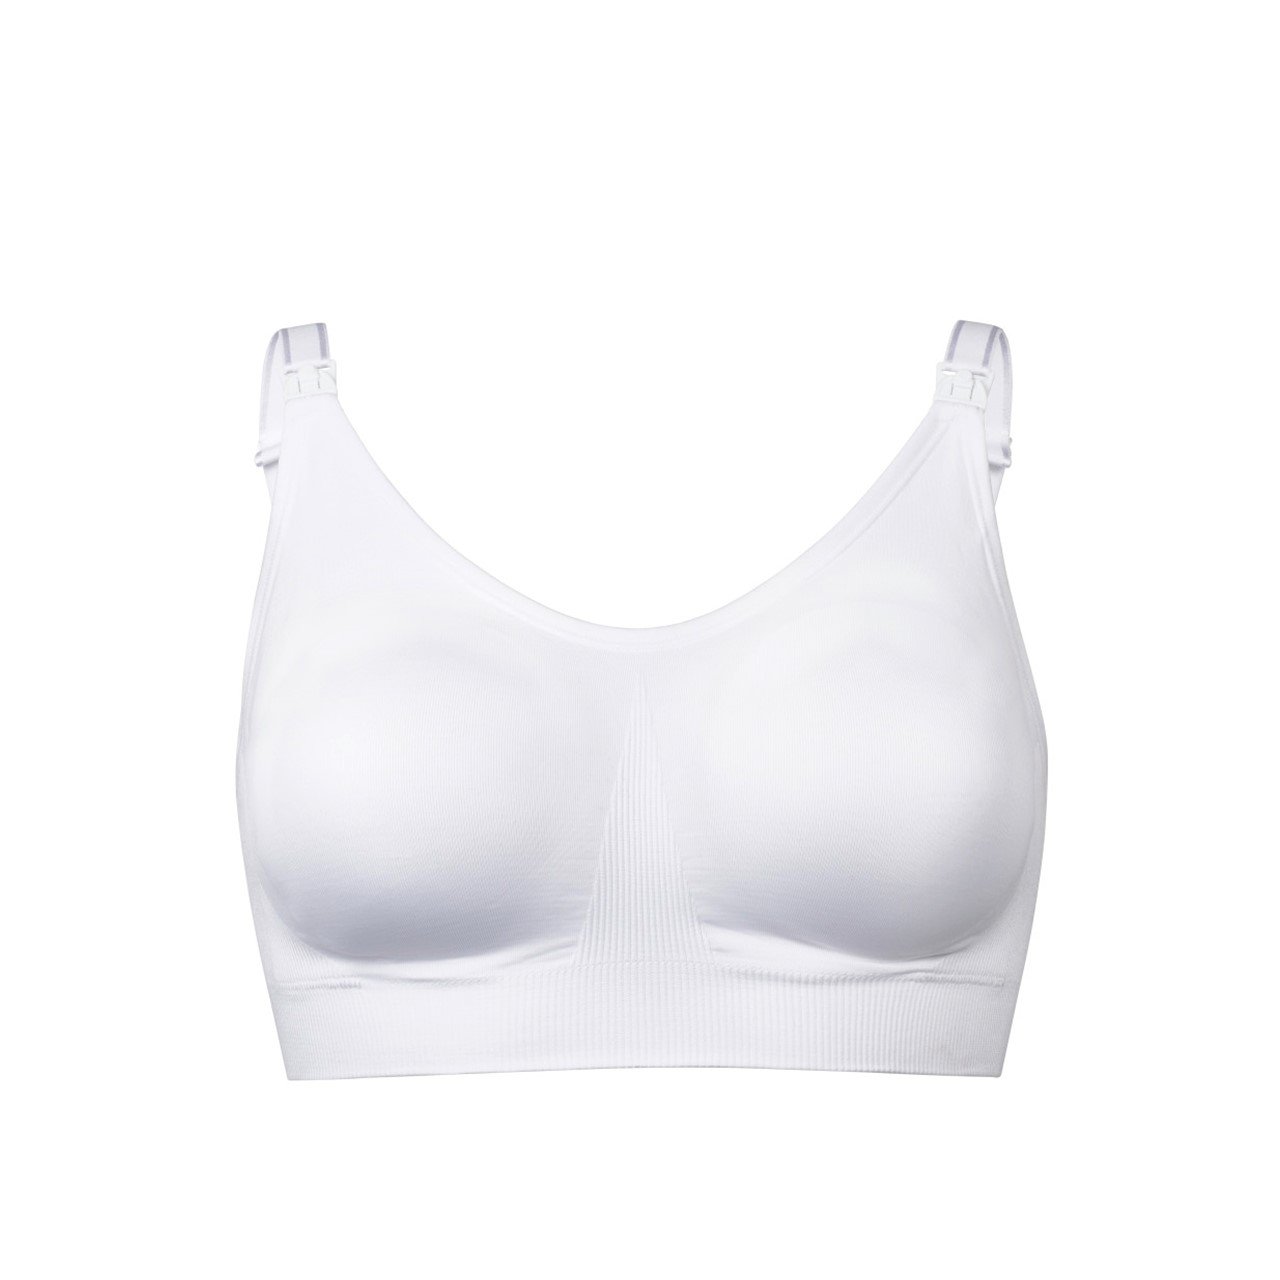 Buy Medela Ultimate BodyFit Bra White Medium Size x1 · USA